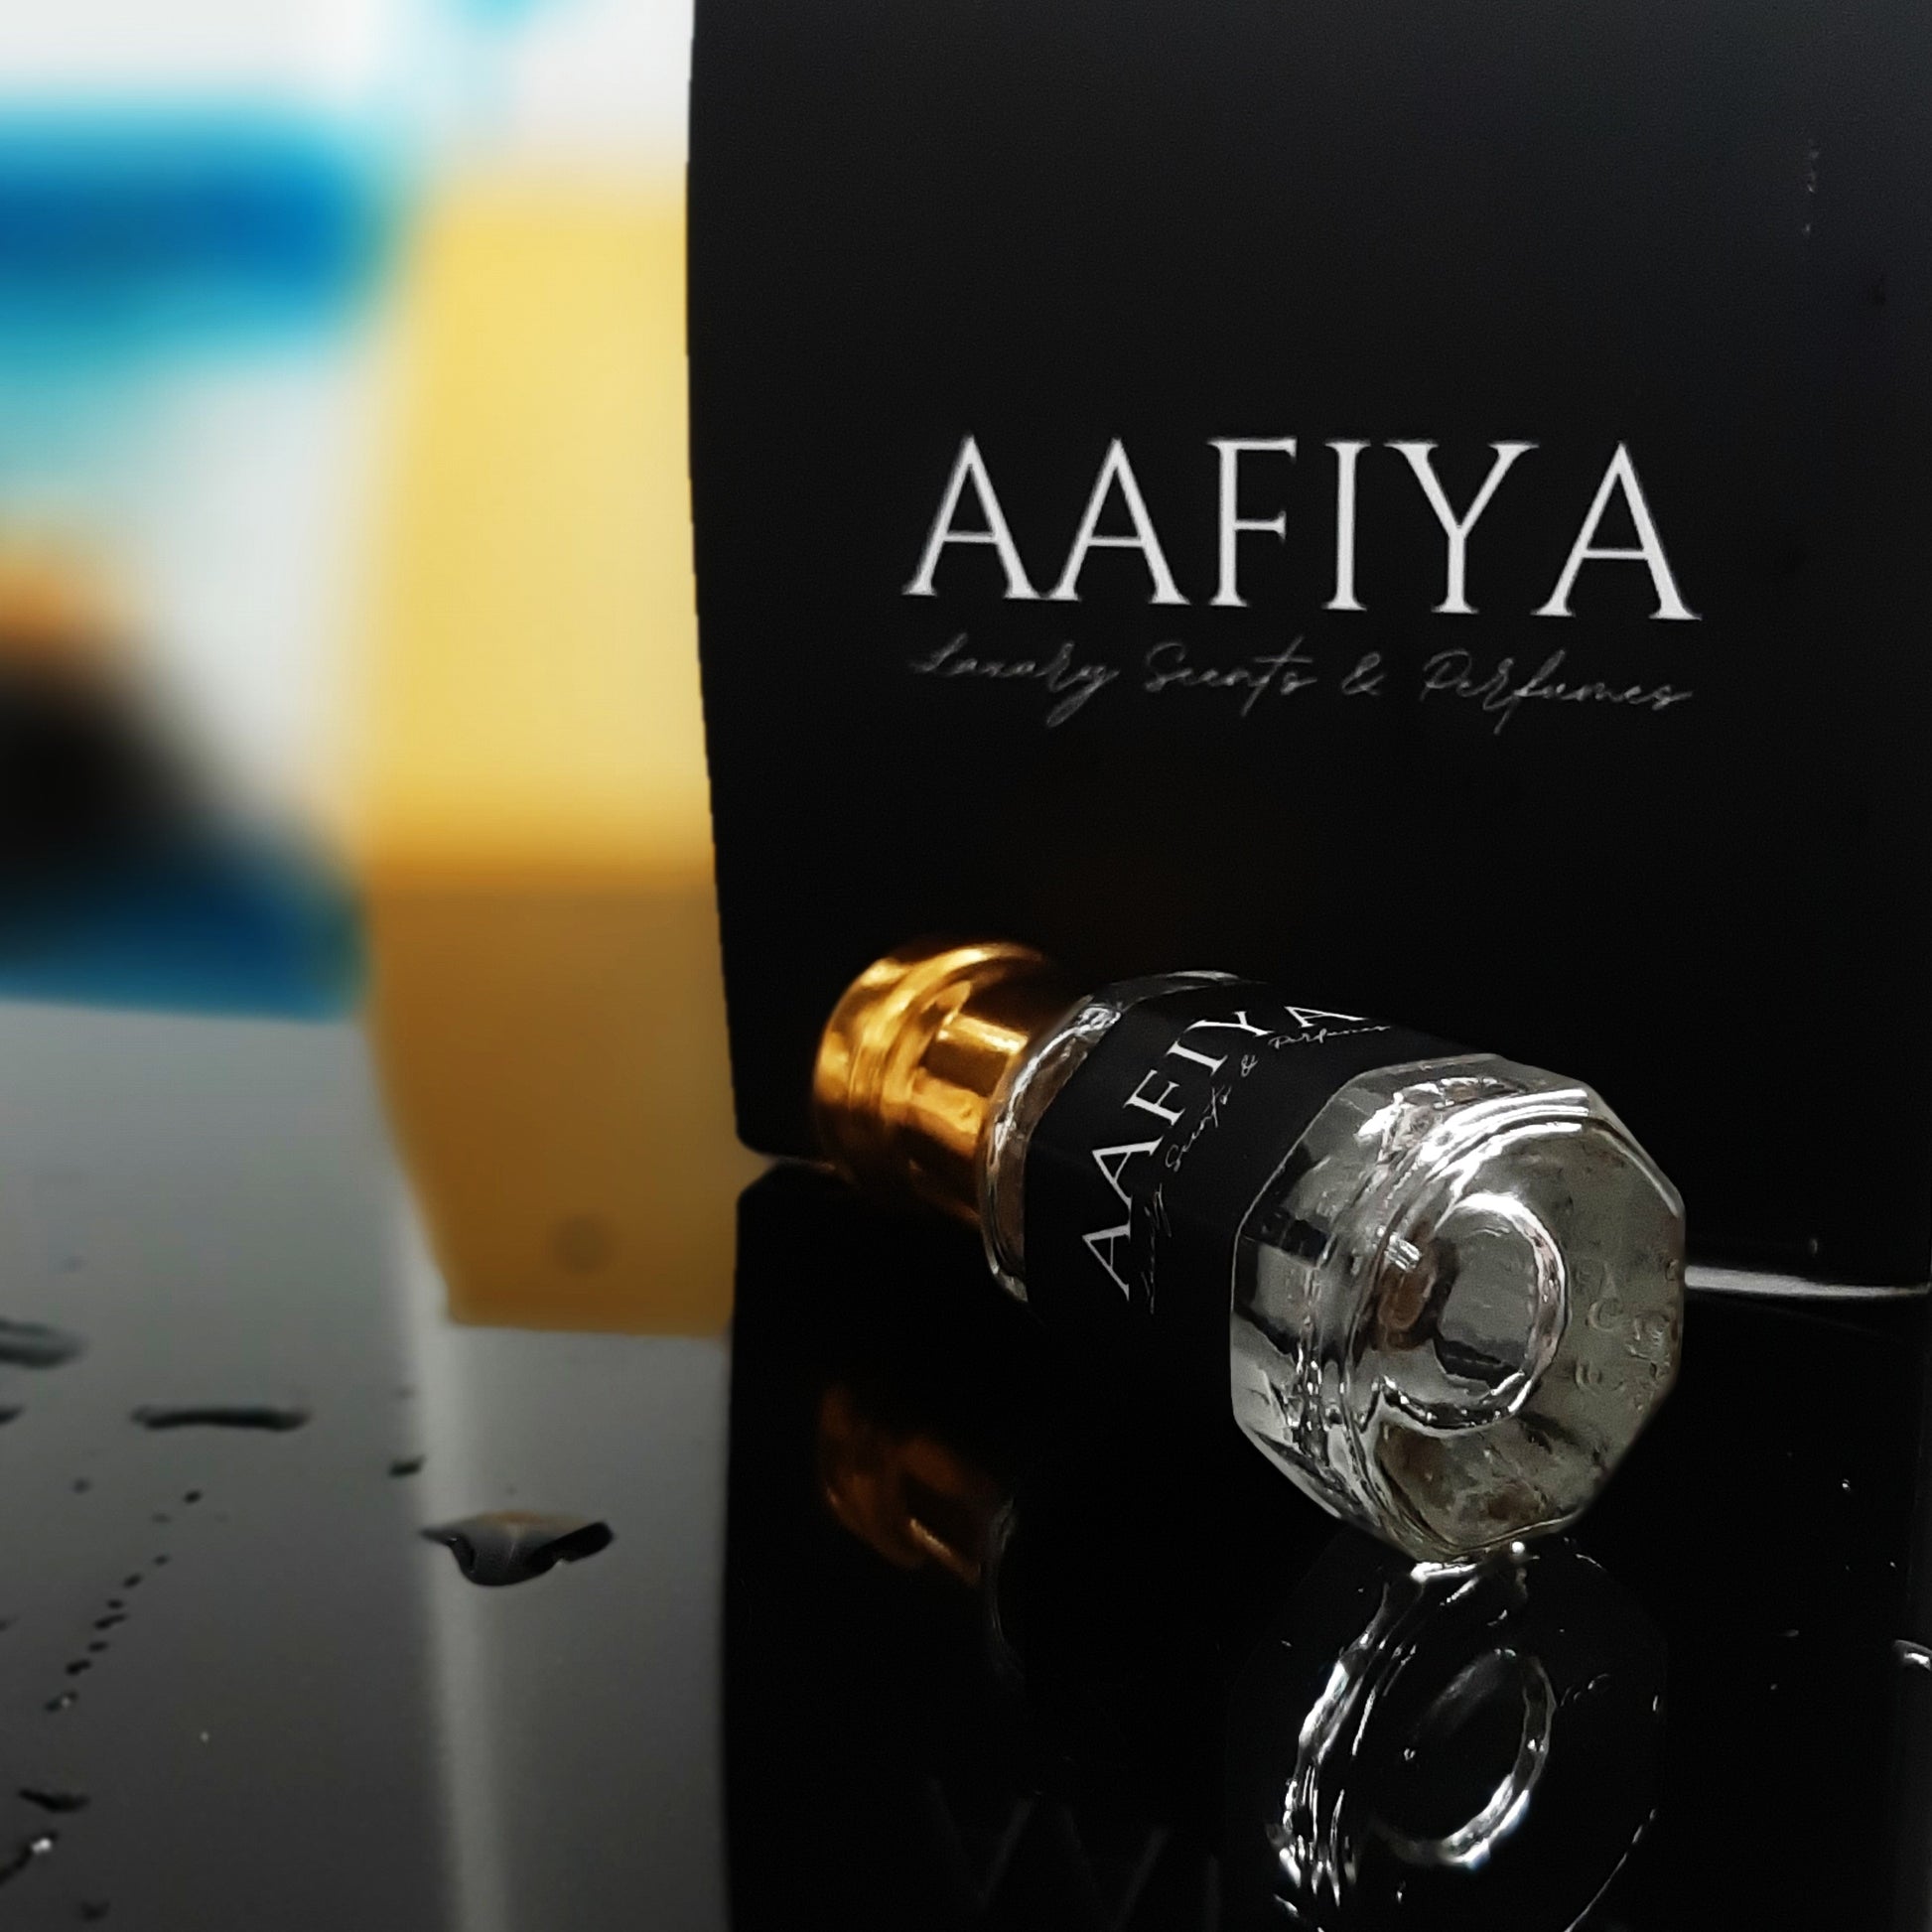 Y Men - Aafiya Luxury Scents & Perfumes